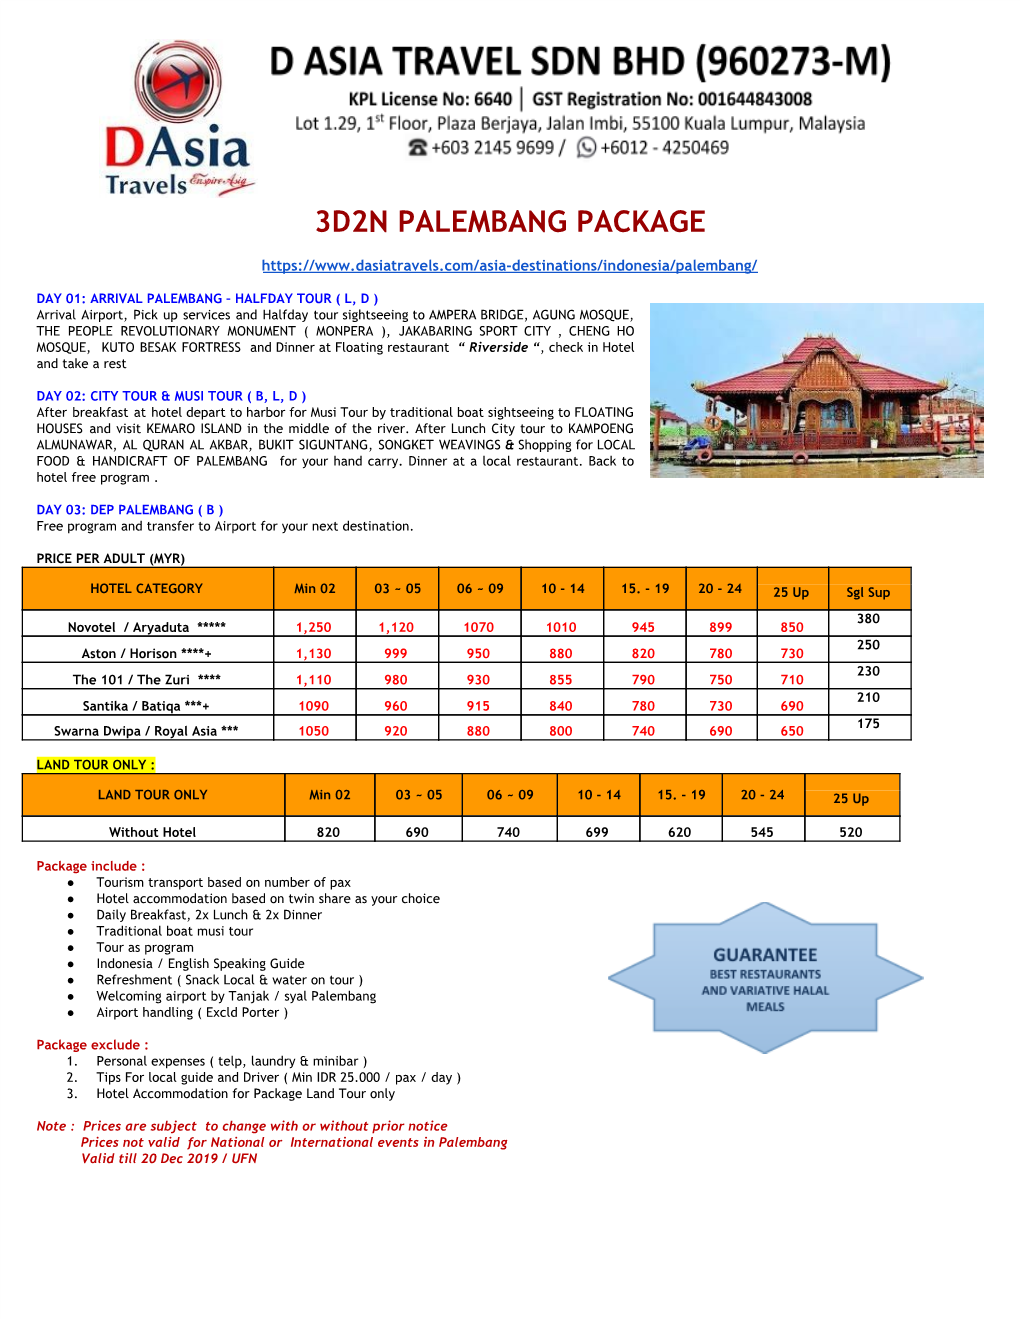 3D2n Palembang Package